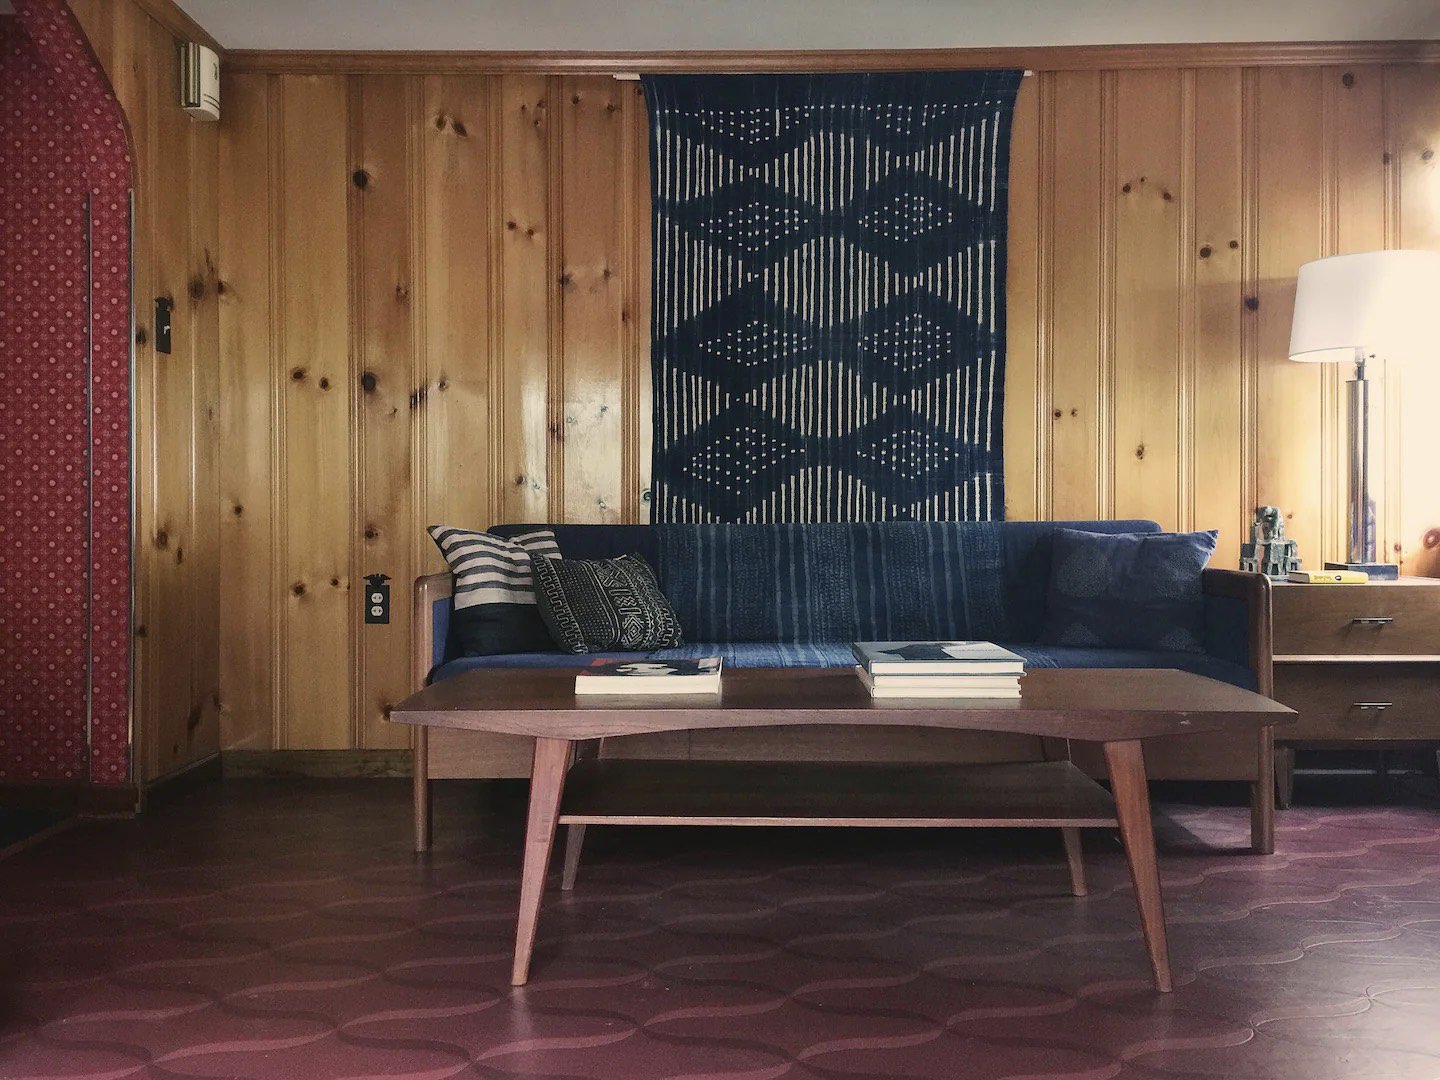 visite deco appartement mid century modern Etats-Unis années 50 lambris bois meuble sombre design minimaliste chaleureux couleur bleu sourd linoléum bordeaux revêtement de sol